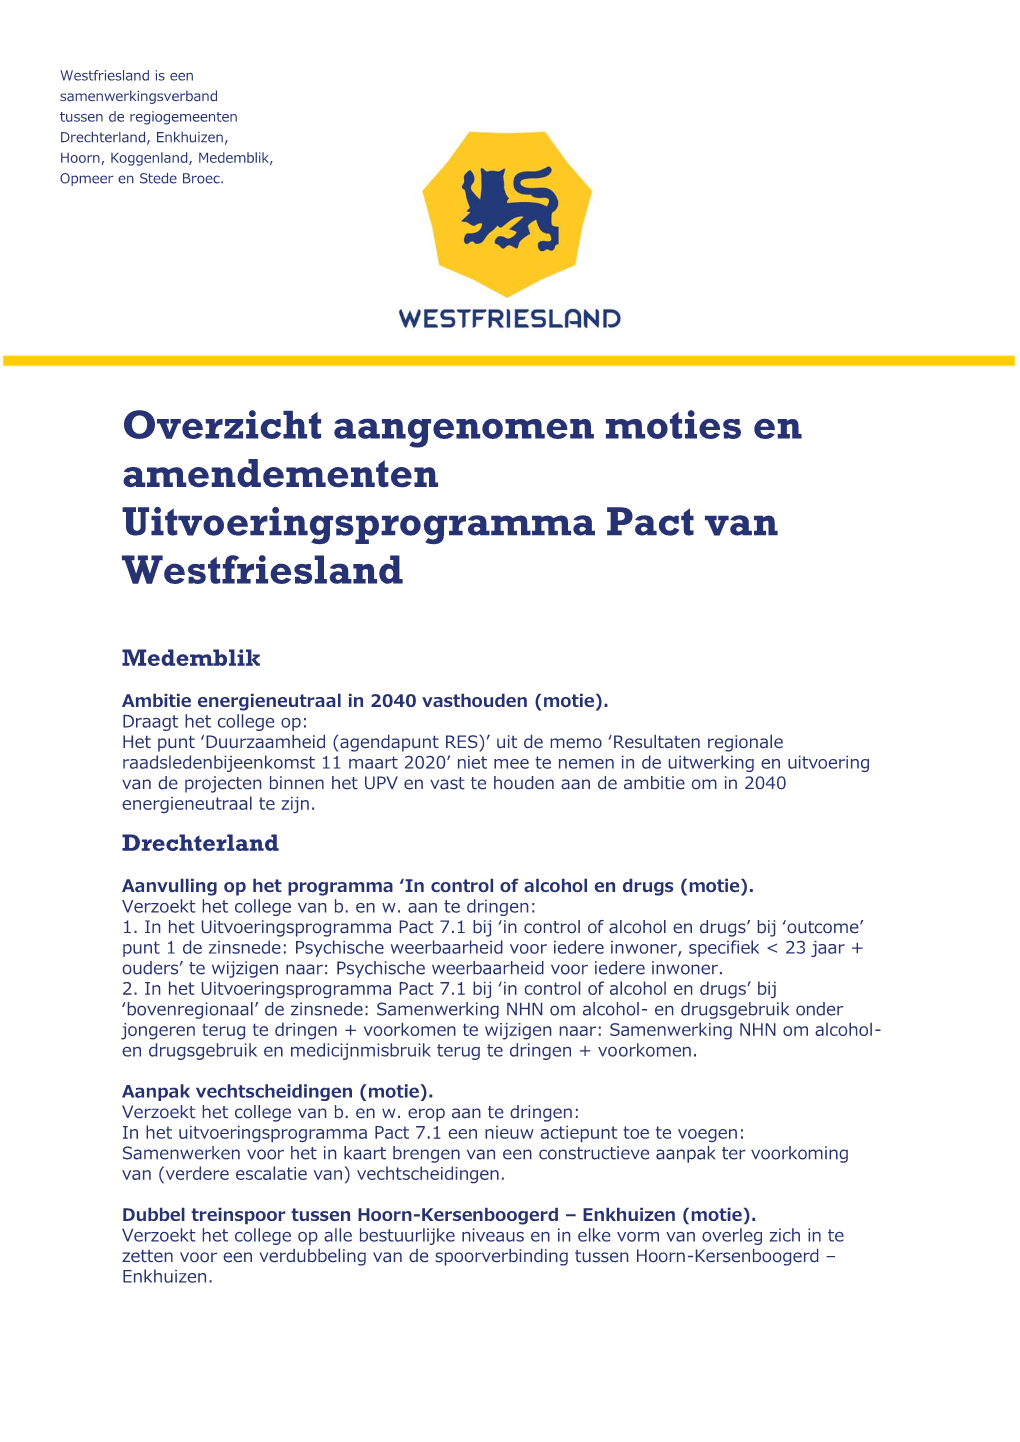 Overzicht Aangenomen Moties En Amendementen Uitvoeringsprogramma Pact Van Westfriesland